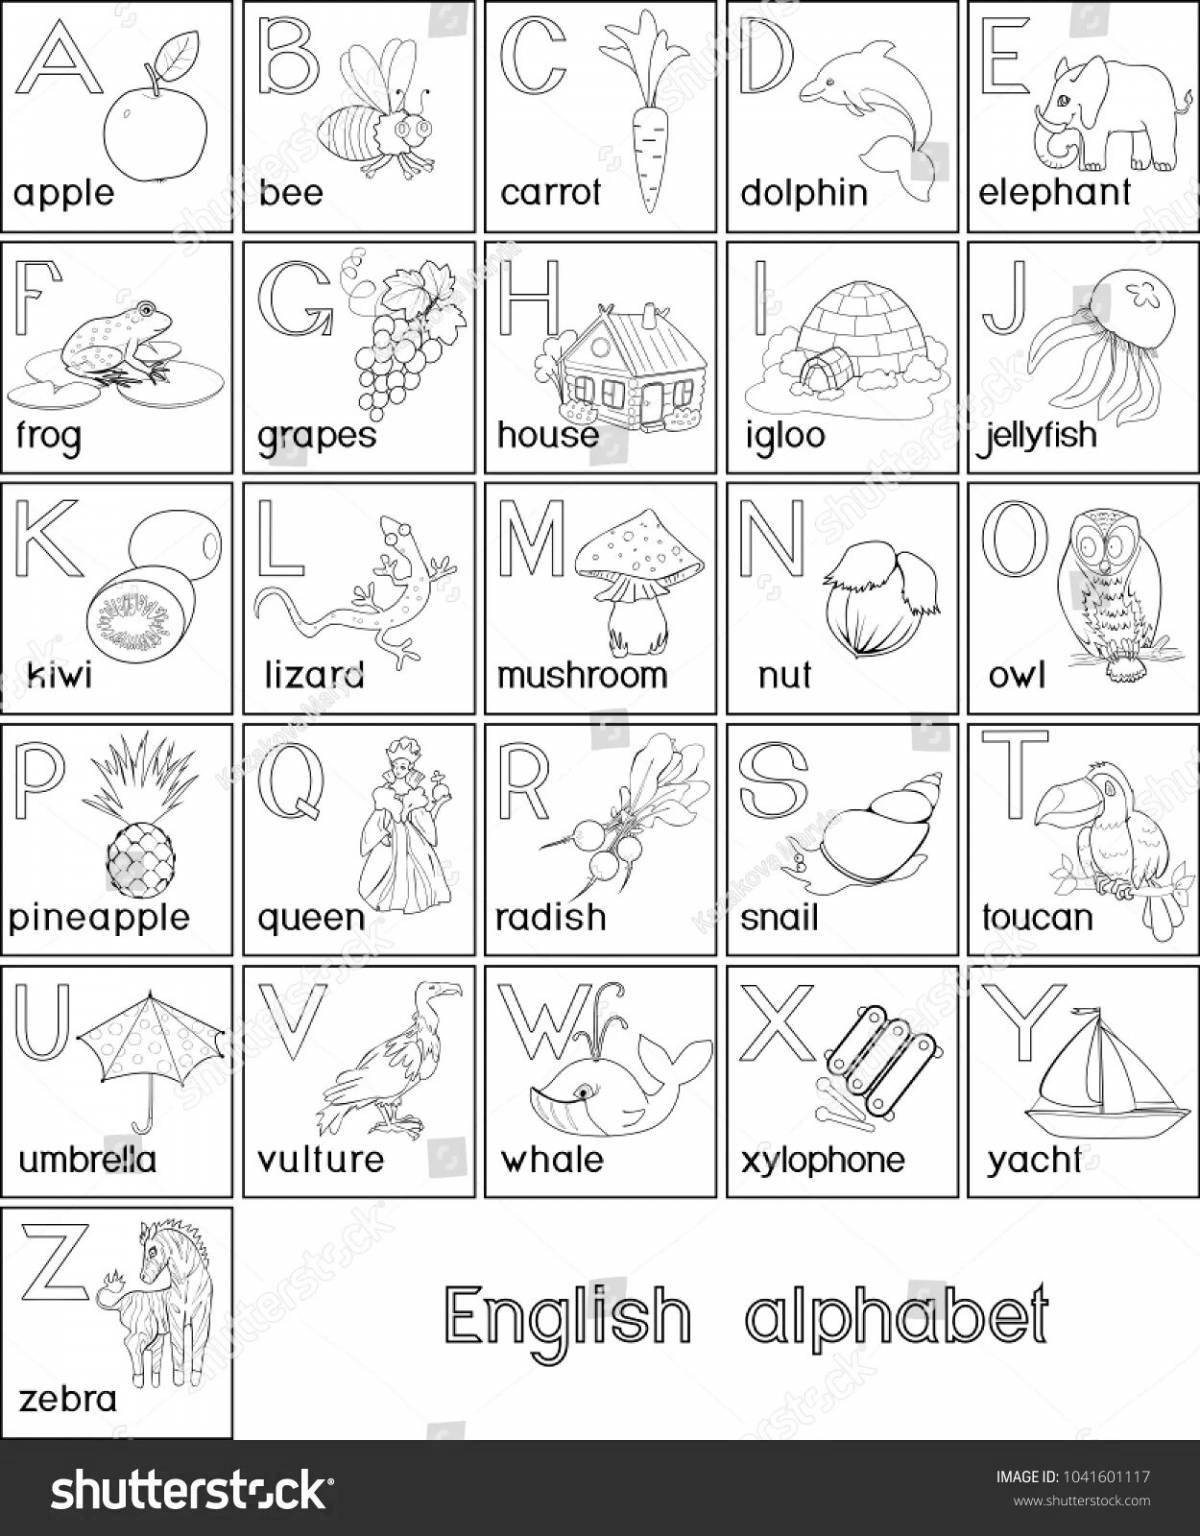 Entertaining coloring English alphabet for grade 2